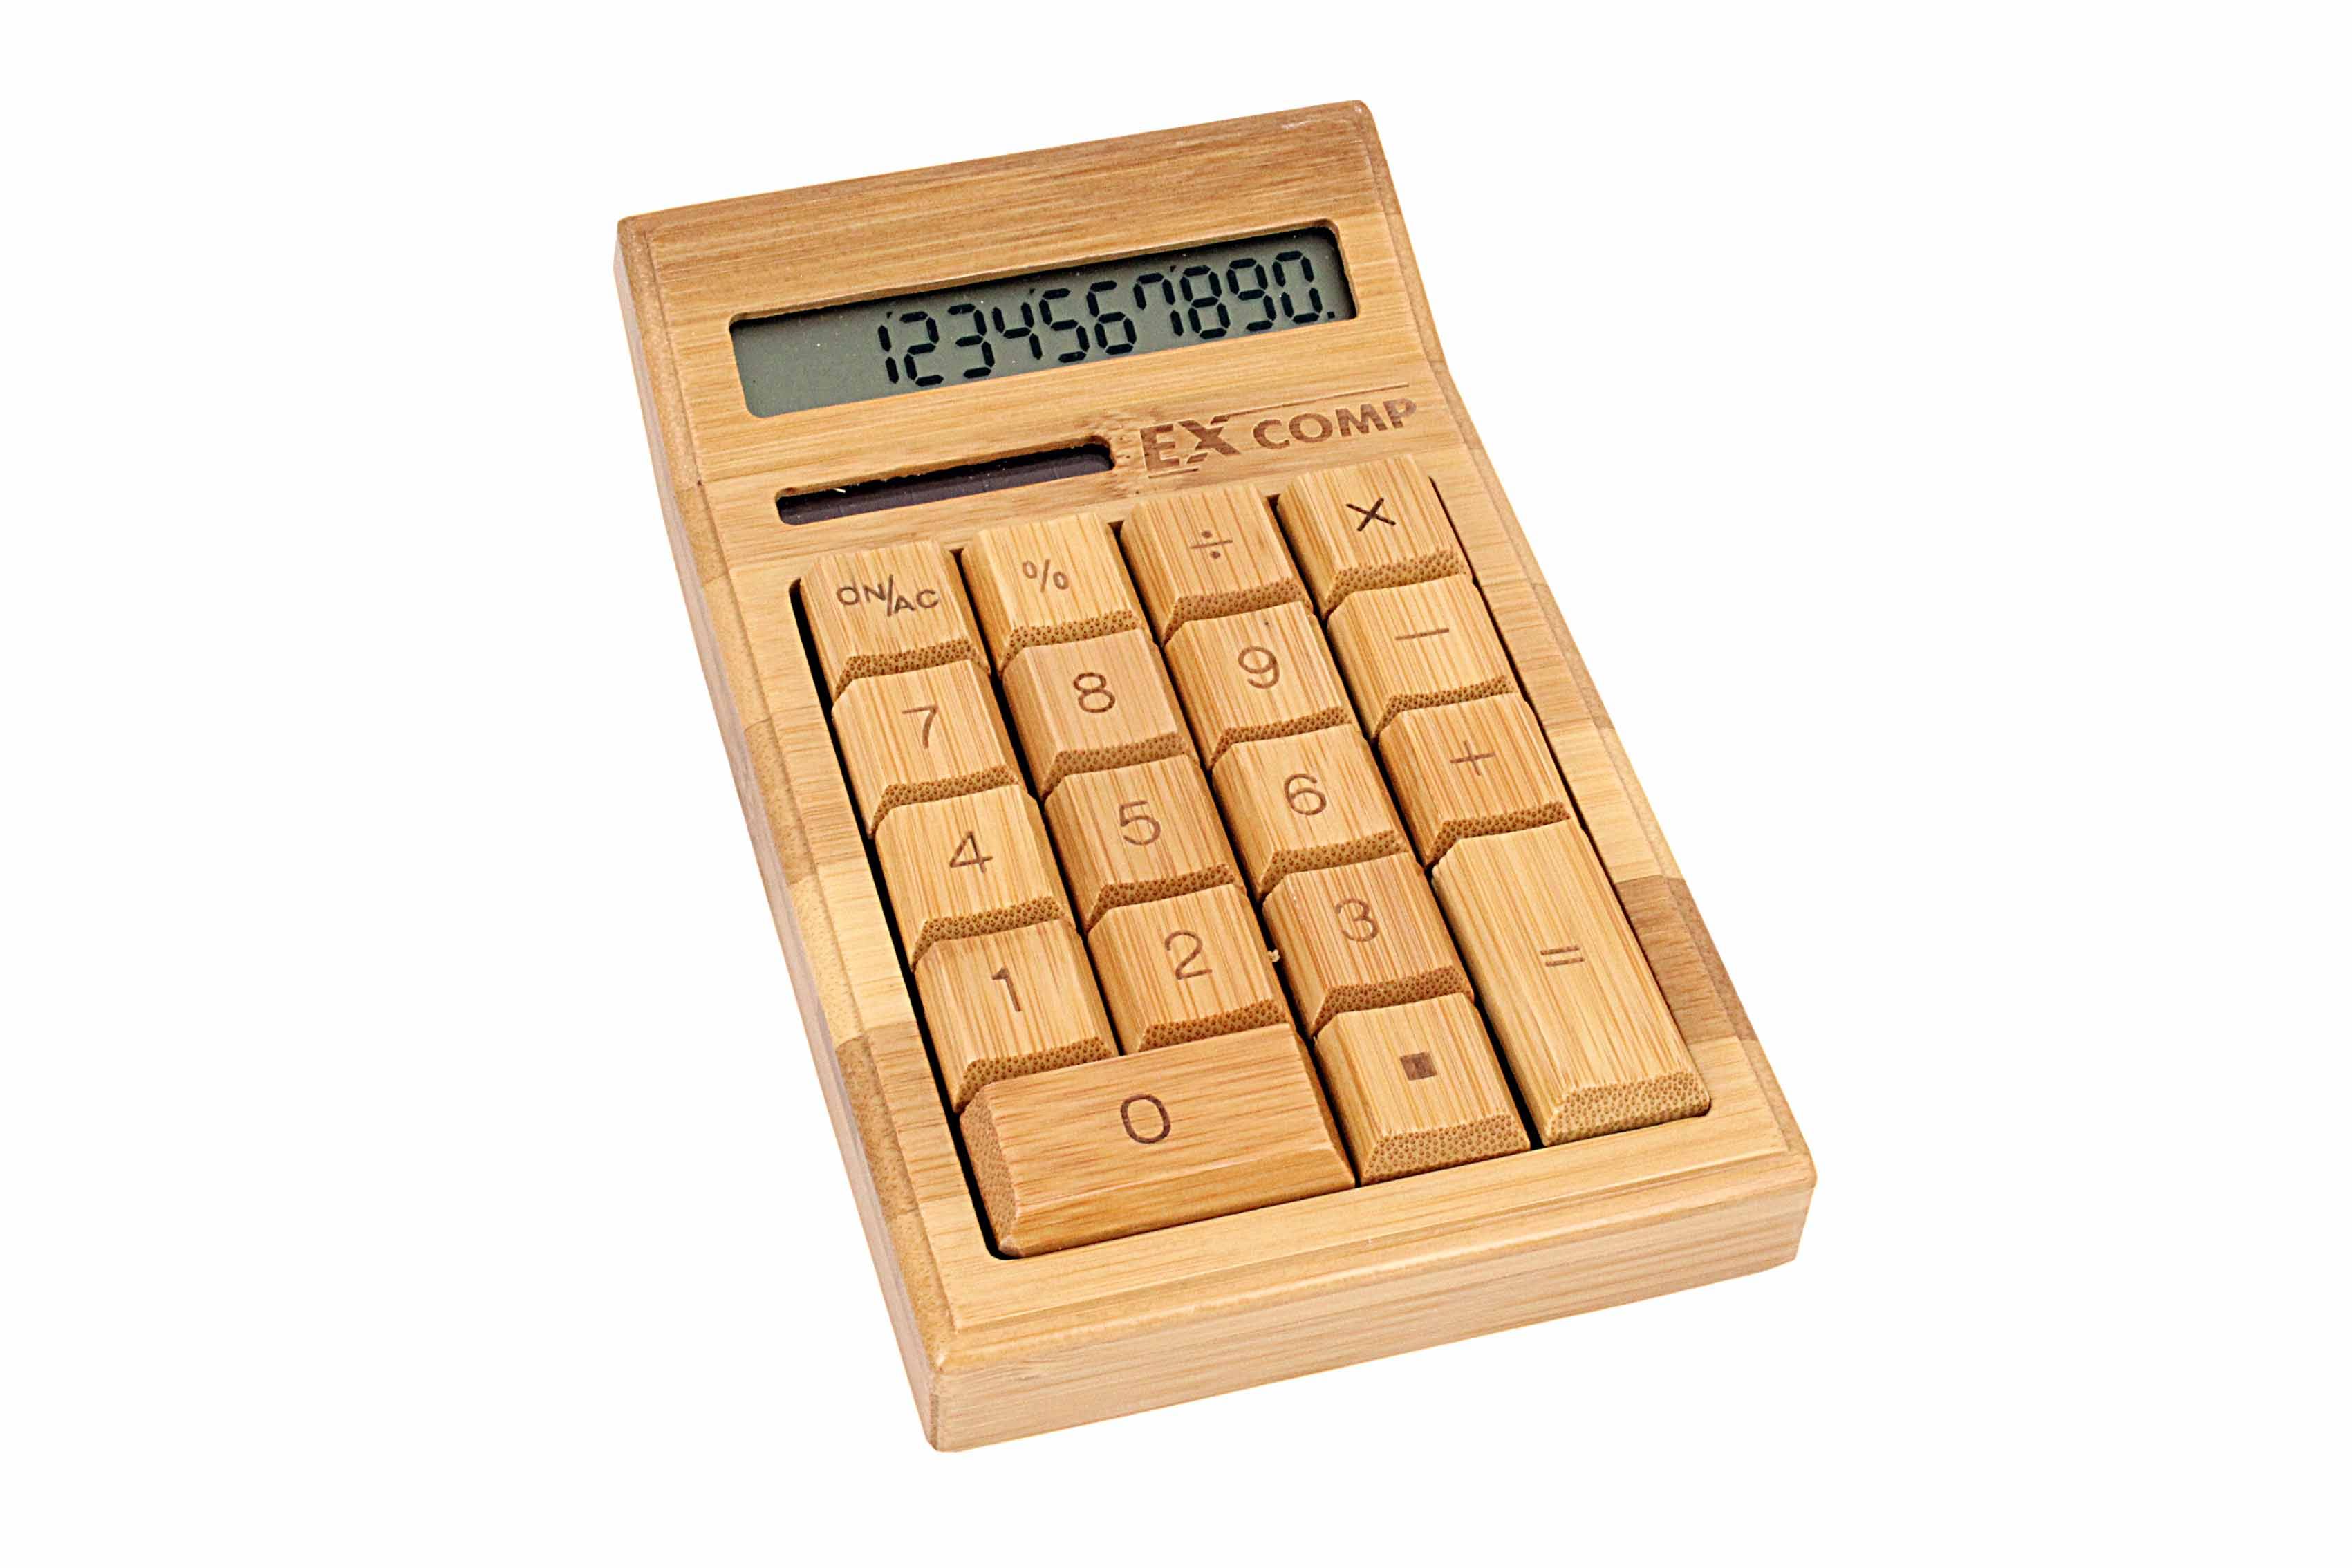 Сколько стоит детский день рождения? берем калькулятор...